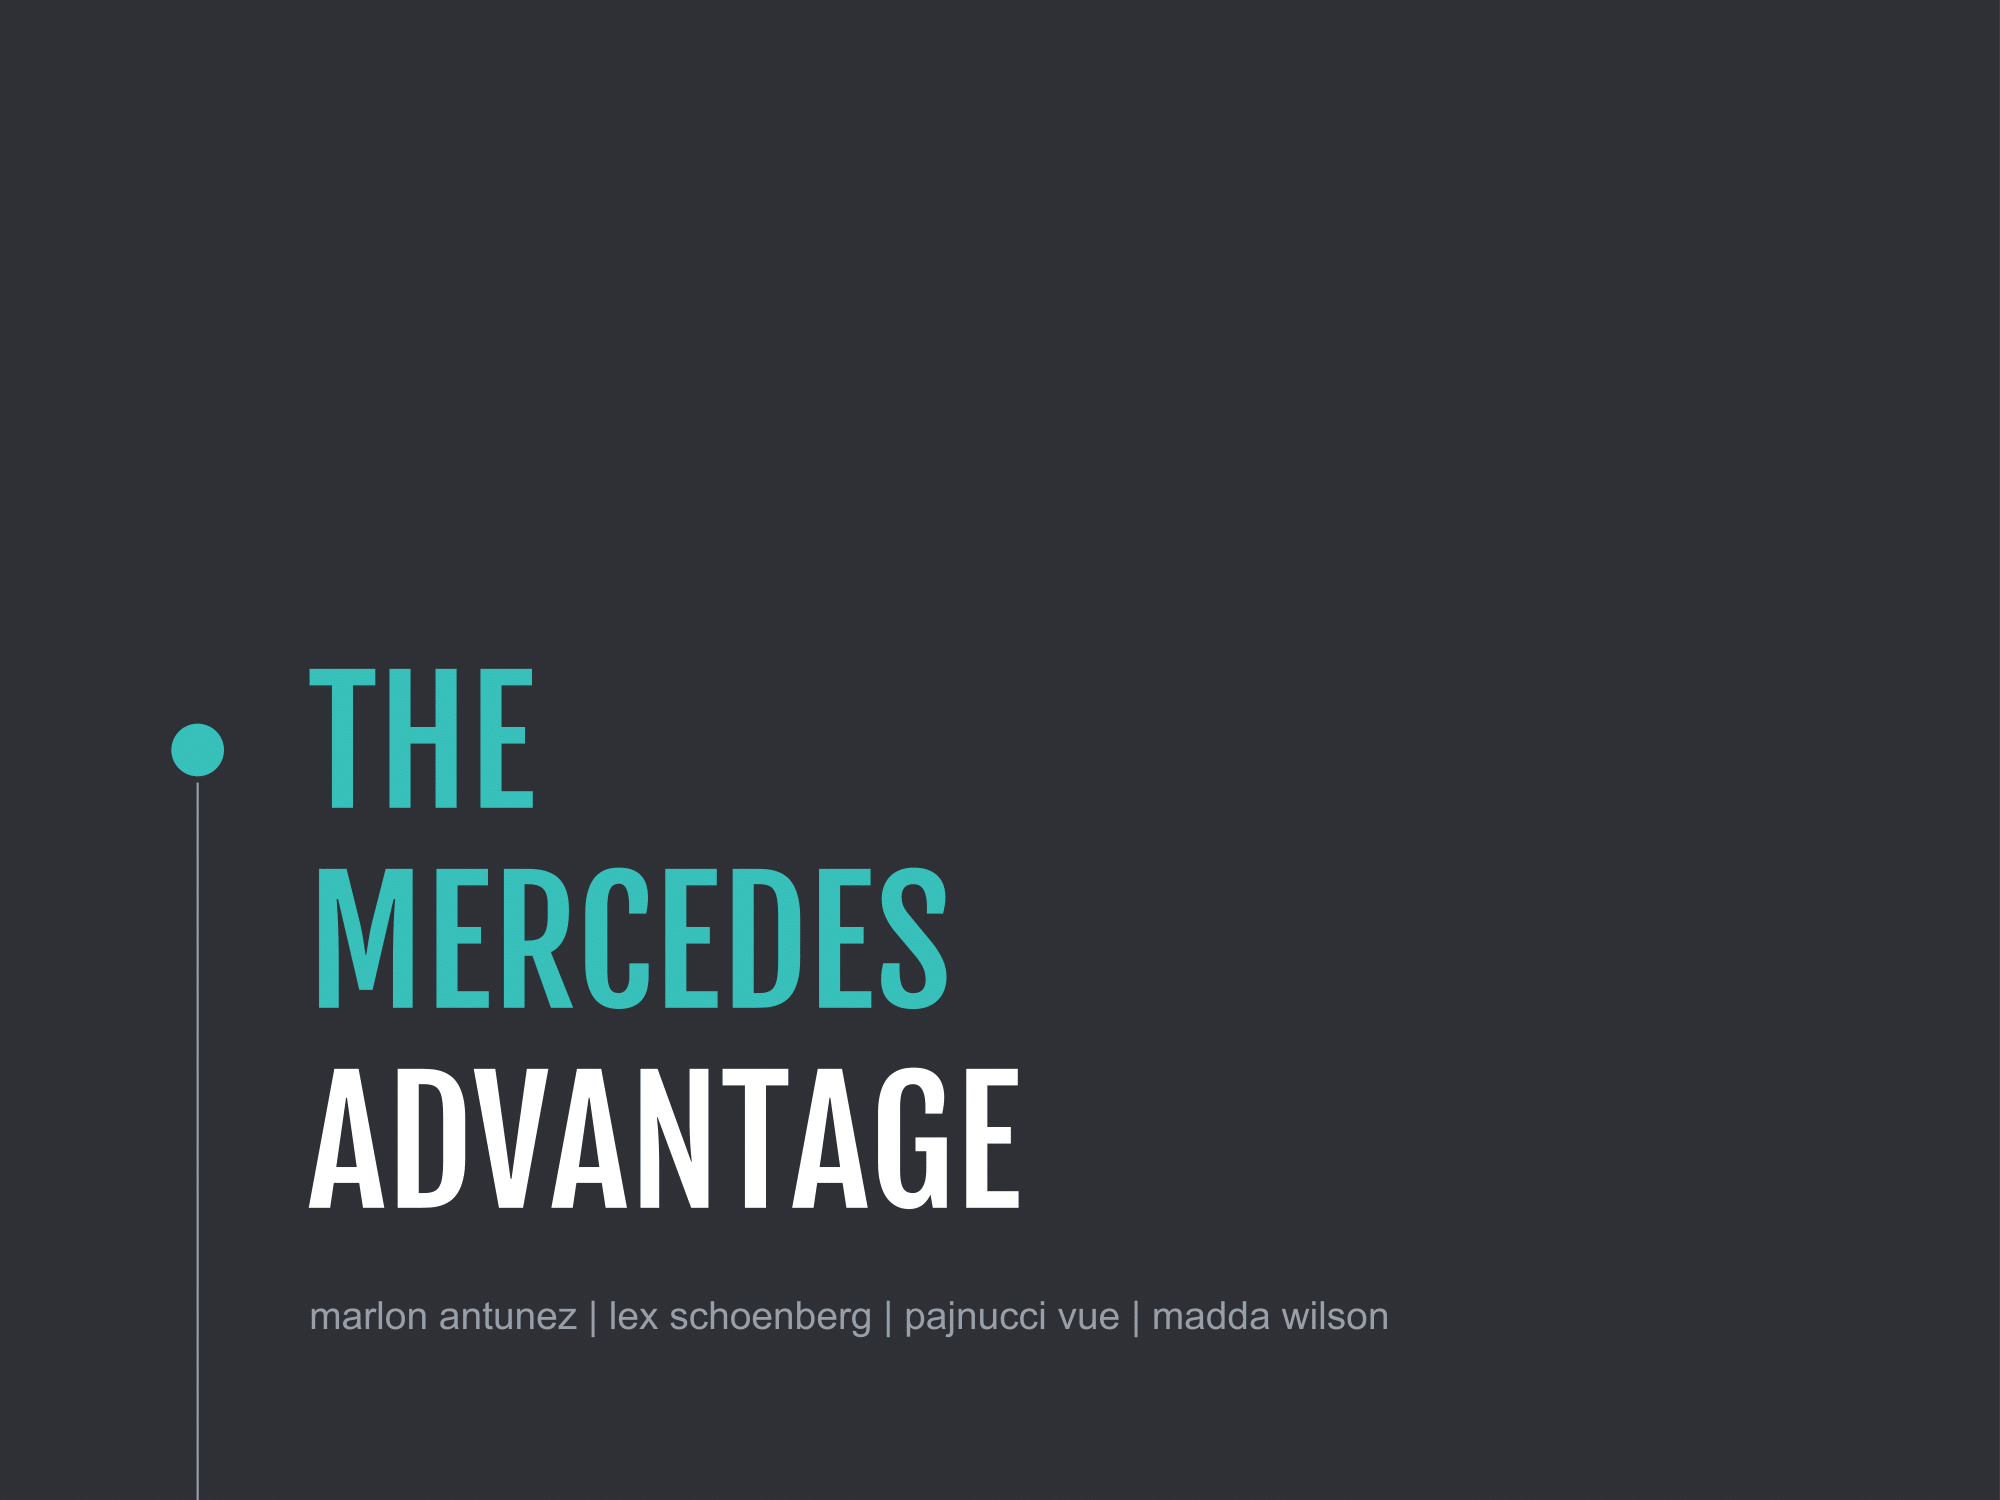 Copy of The Mercedes Advantage -01.png